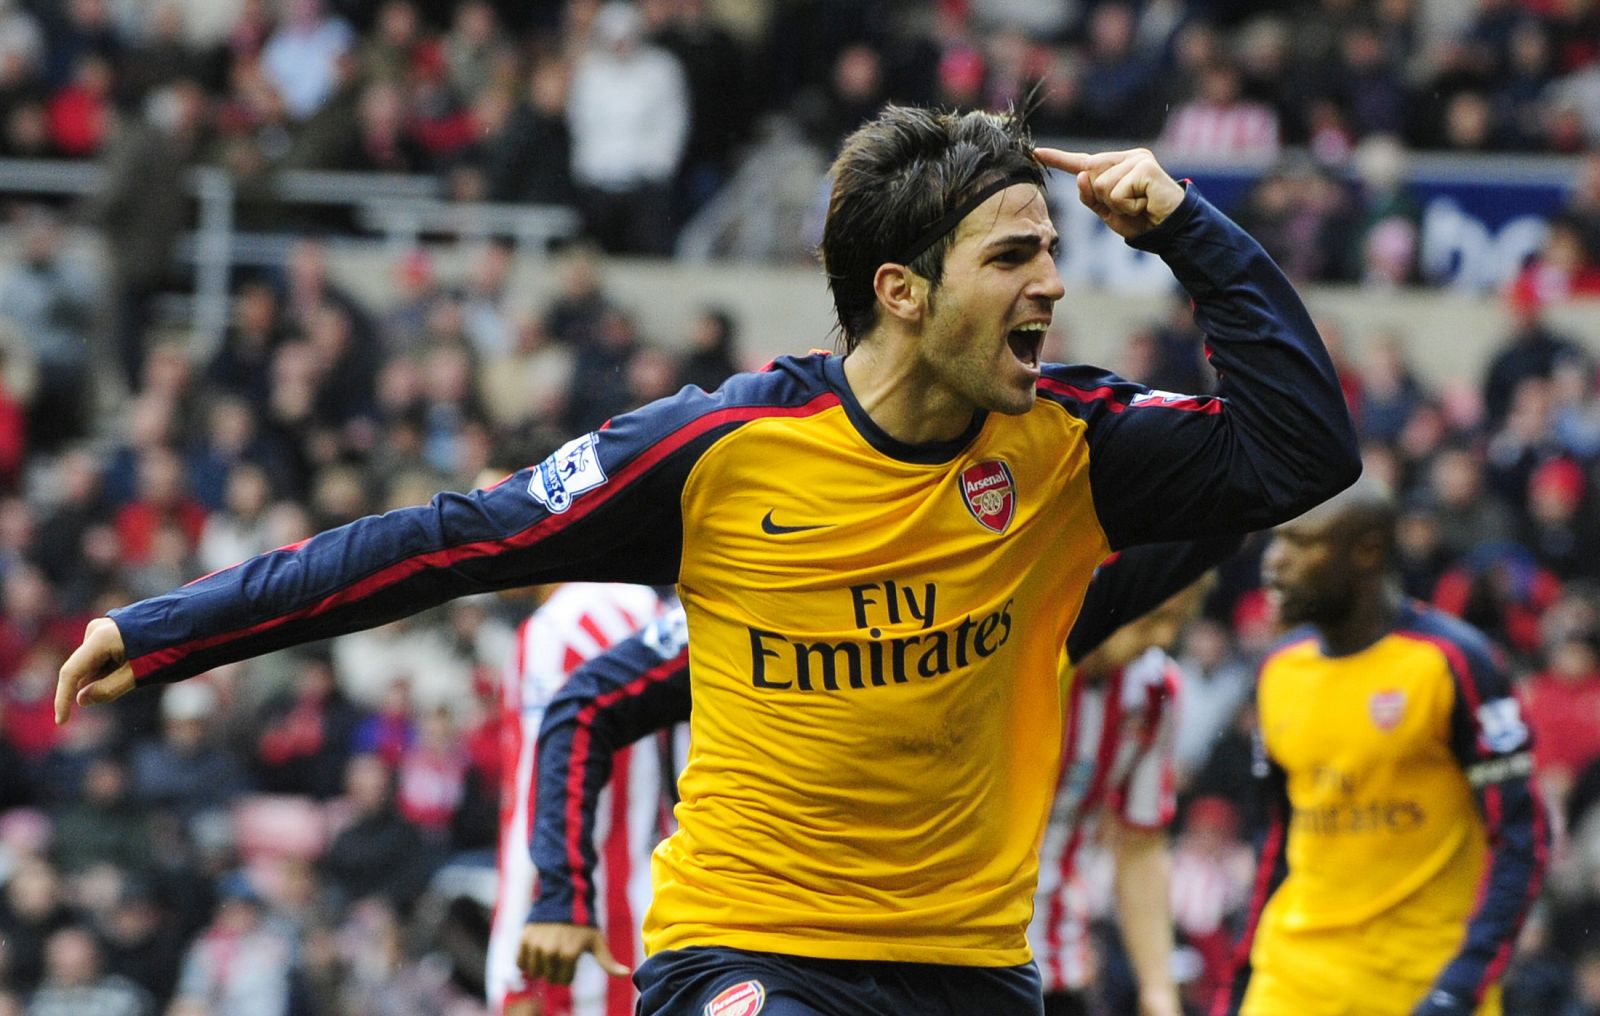 El jugador del Arsenal, Cesc Fabregas, celebra un gol marcado al Sunderland. in Sunderland